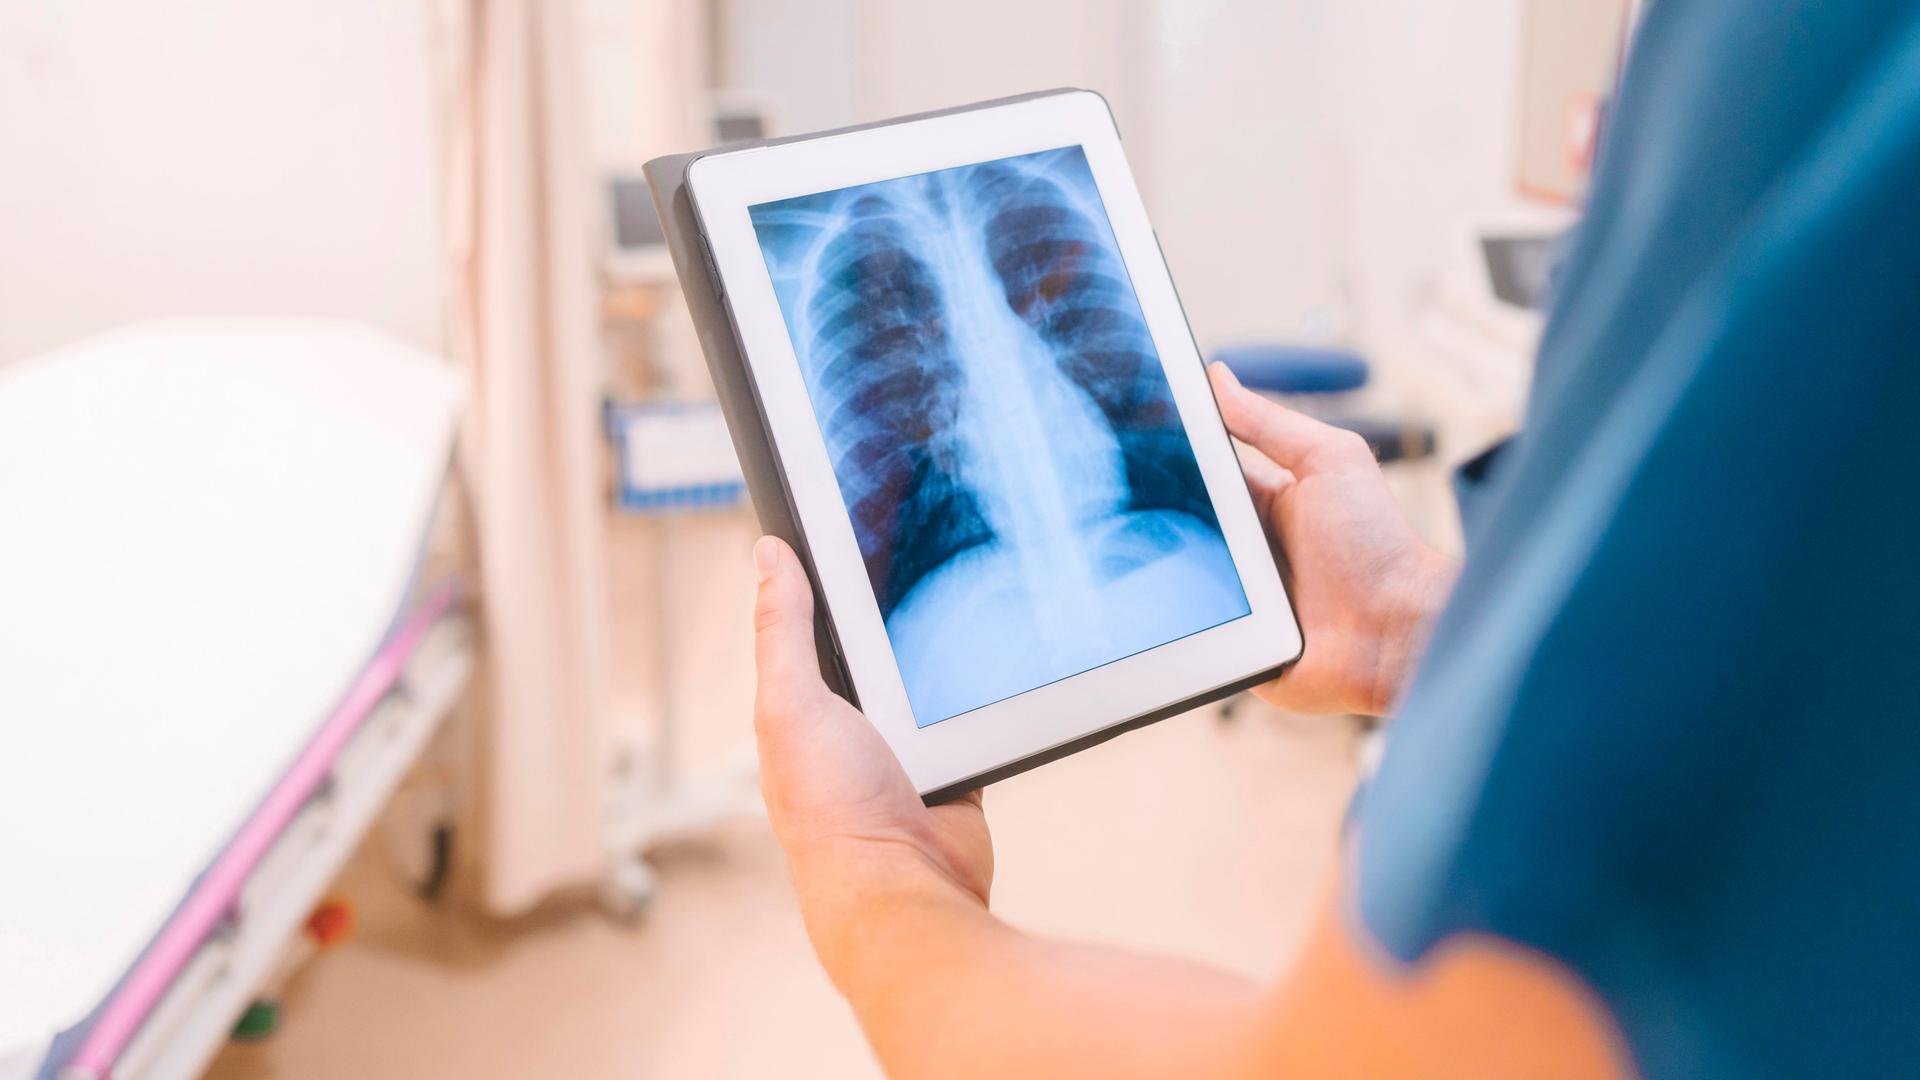 Eine Person hält ein Ipad auf dem ein Röntgenbild zu sehen ist